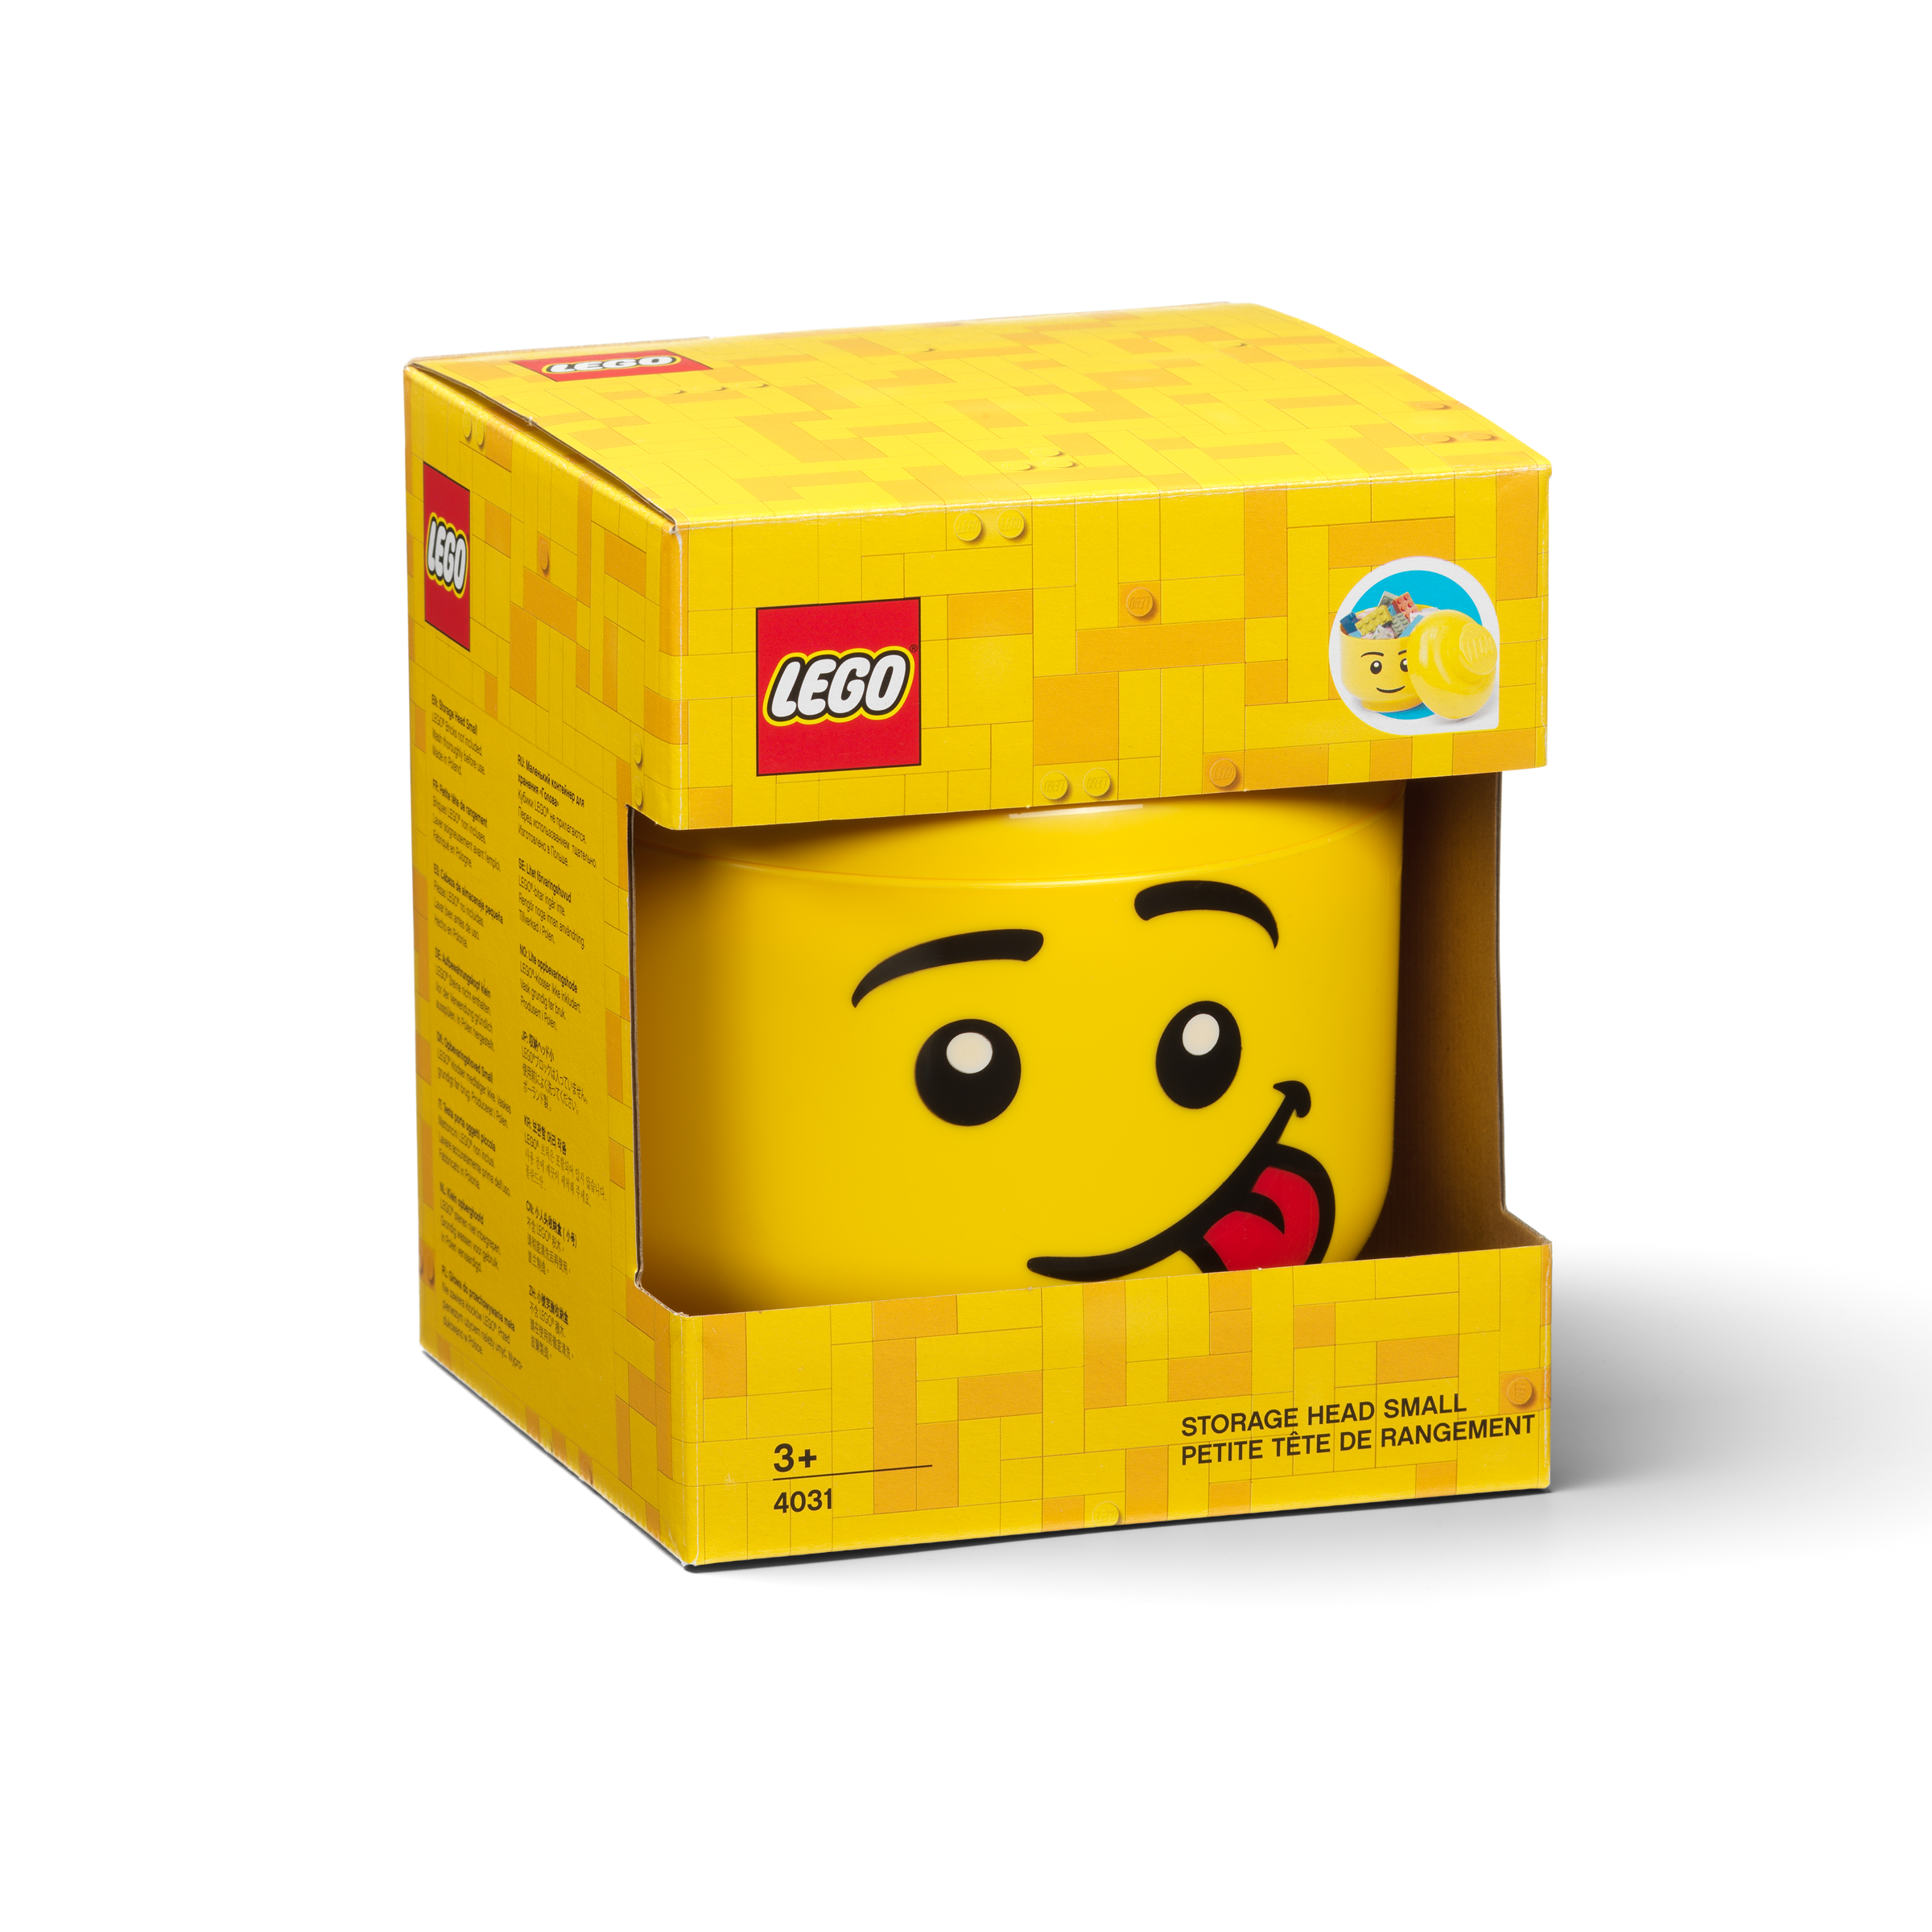 Testa contenitore LEGO – Mini (ammiccante) 5006211 – 9,99 €